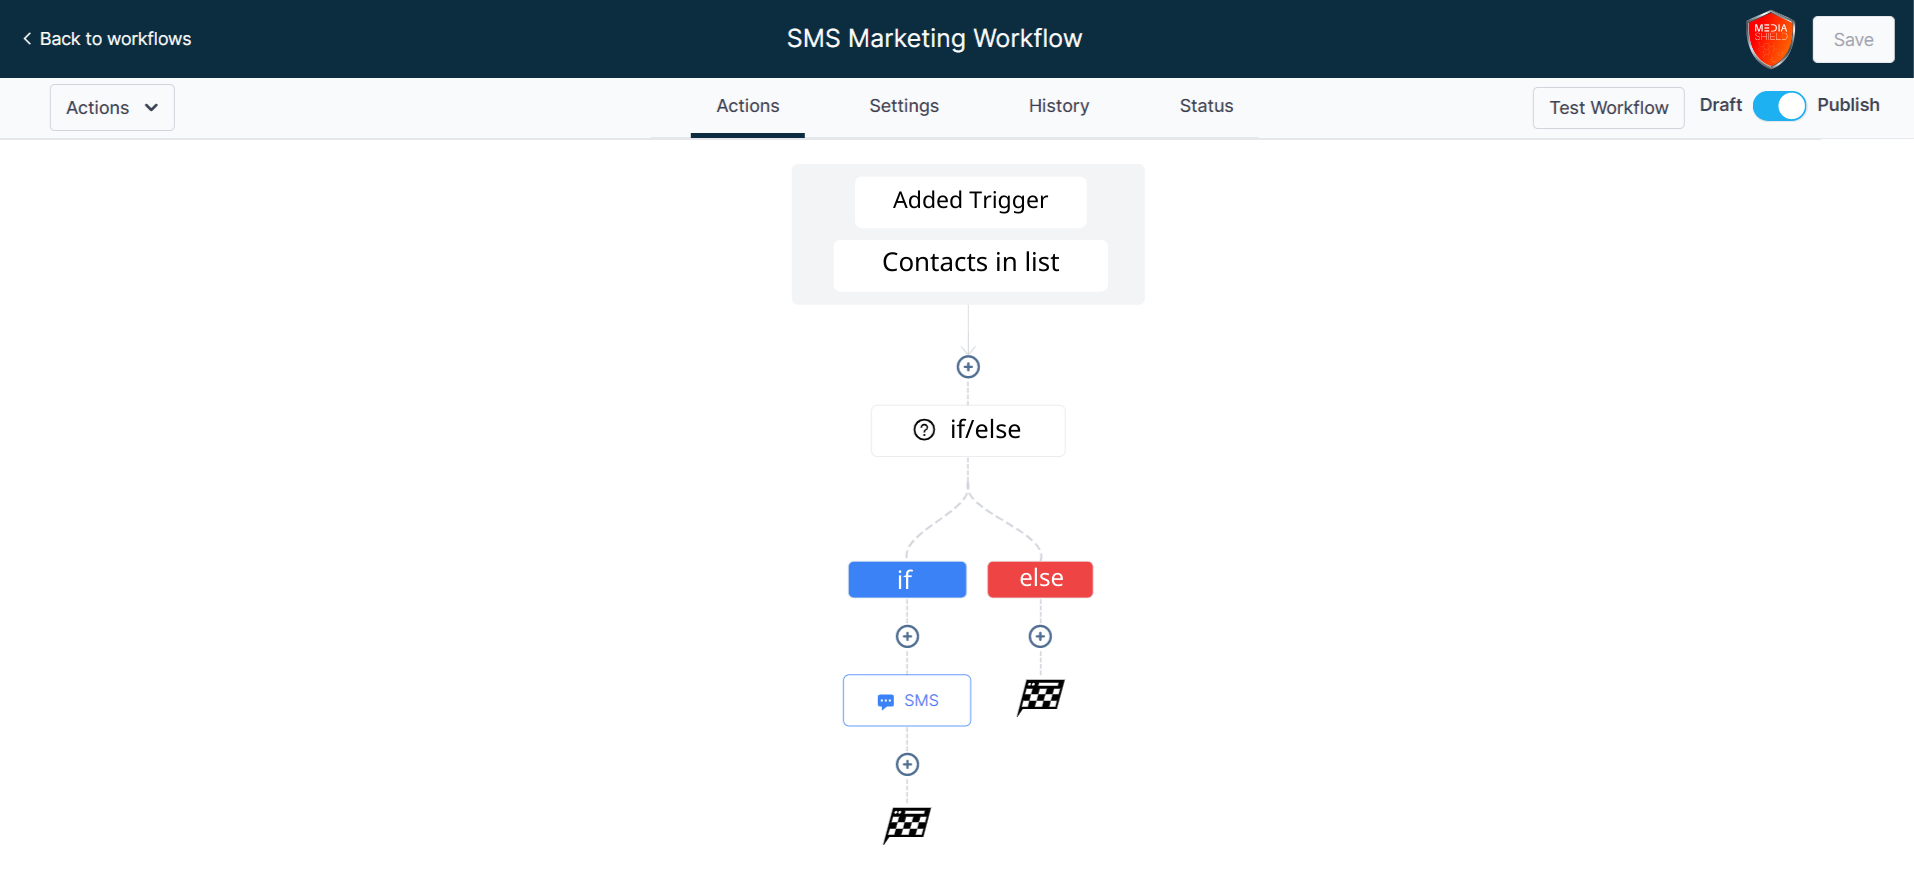 SMS Marketing Workflow